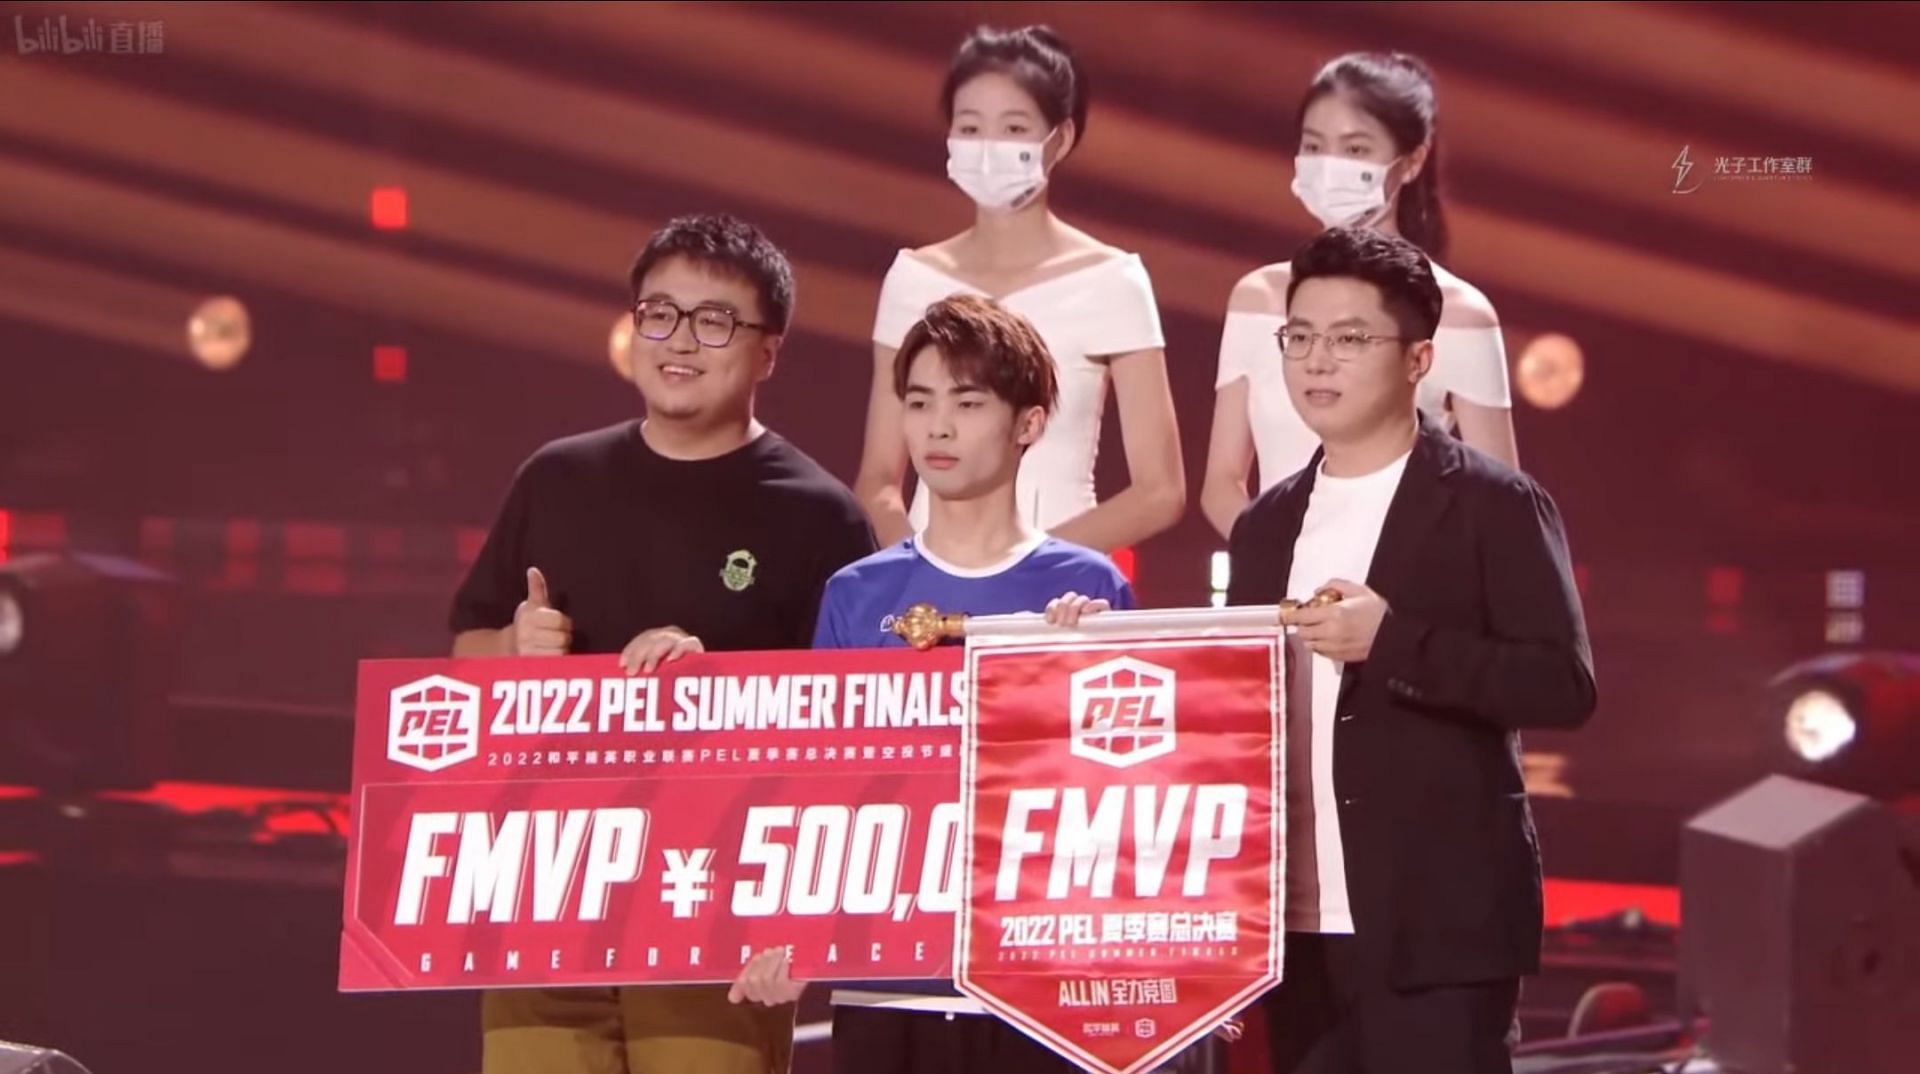 TT Ajie was the MVP of PEL Finals (Image via Tencent)